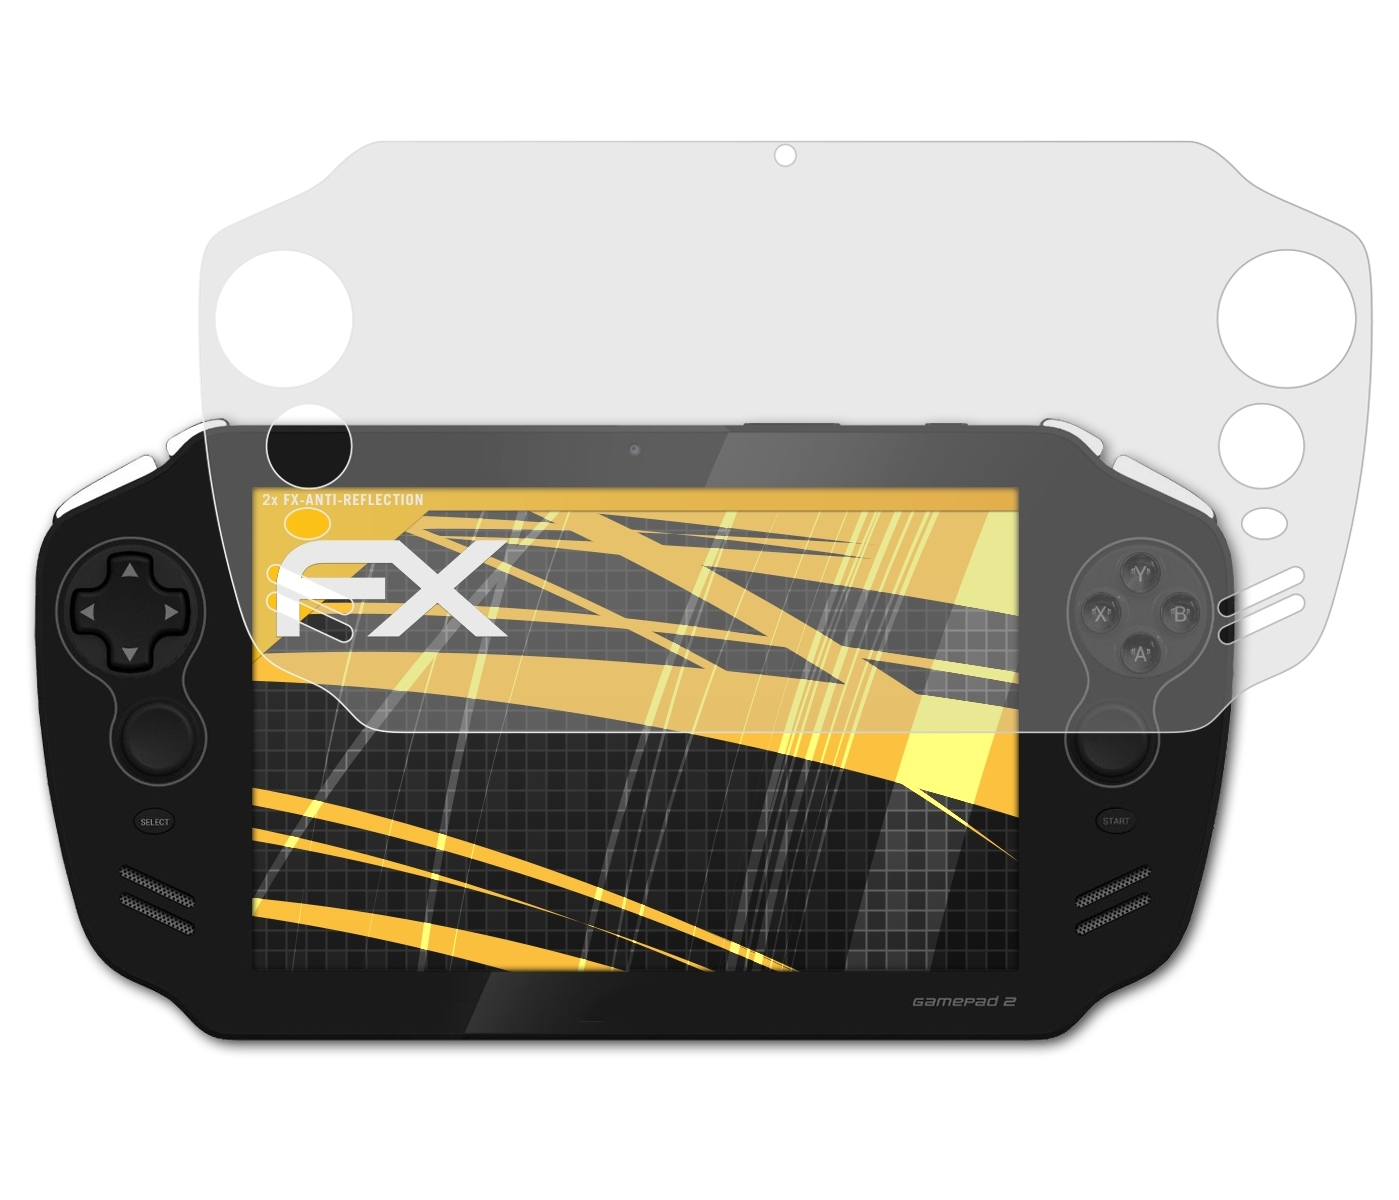 Archos Displayschutz(für 2) 2x ATFOLIX GamePad FX-Antireflex